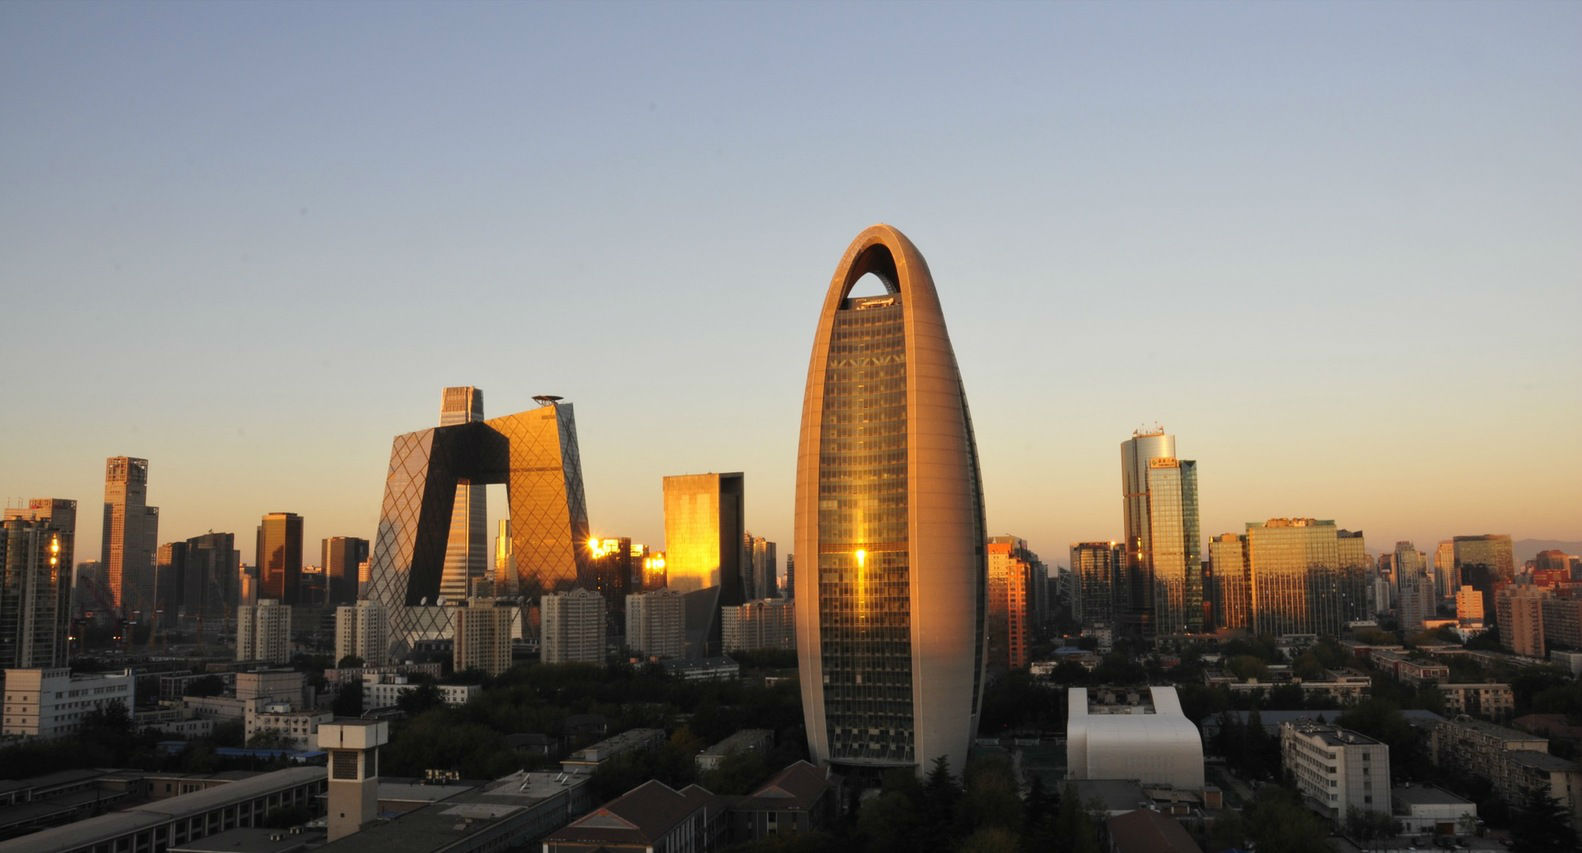 人民日报社总部大楼可谓自2008年北京奥运会之后北京最重要的建筑物之